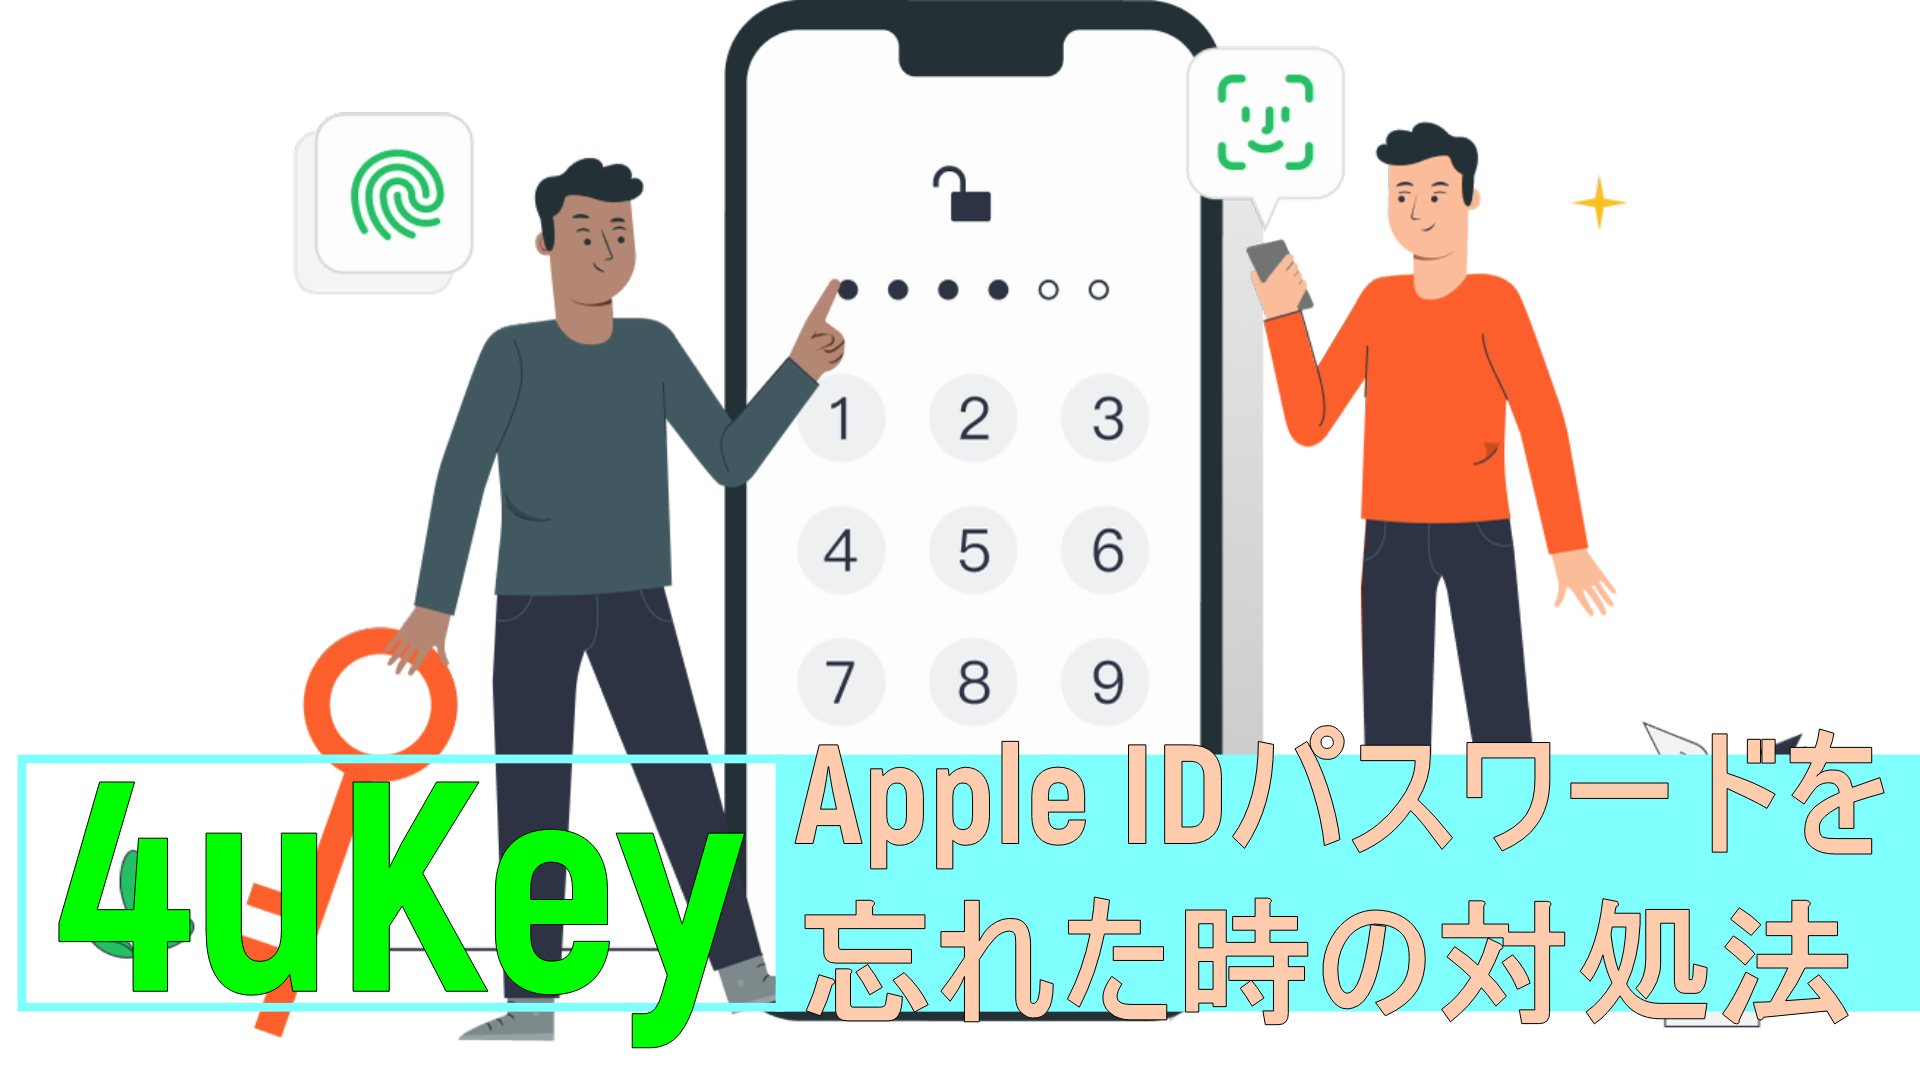 dorublog | Apple IDパスワードを忘れた時の対処法-Tenorshare 4uKeyの使い方とレビュー